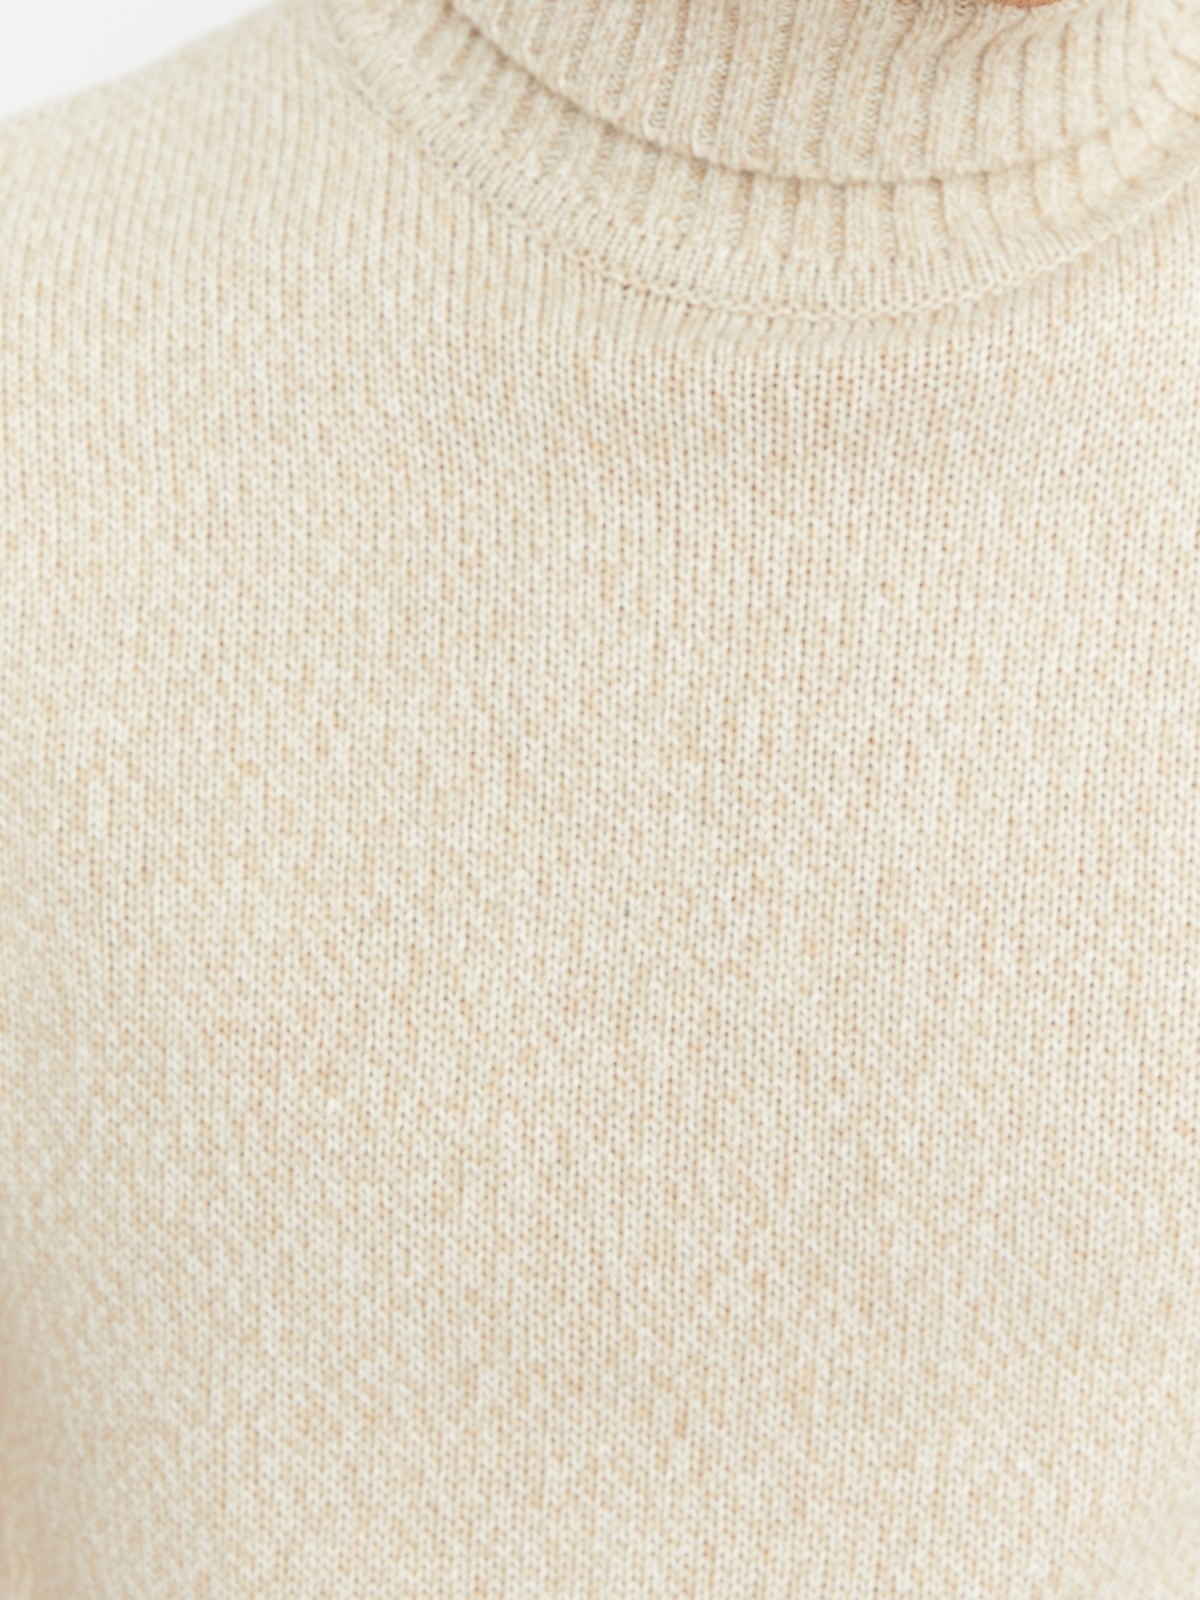 Вязаная шерстяная водолазка-свитер с горлом